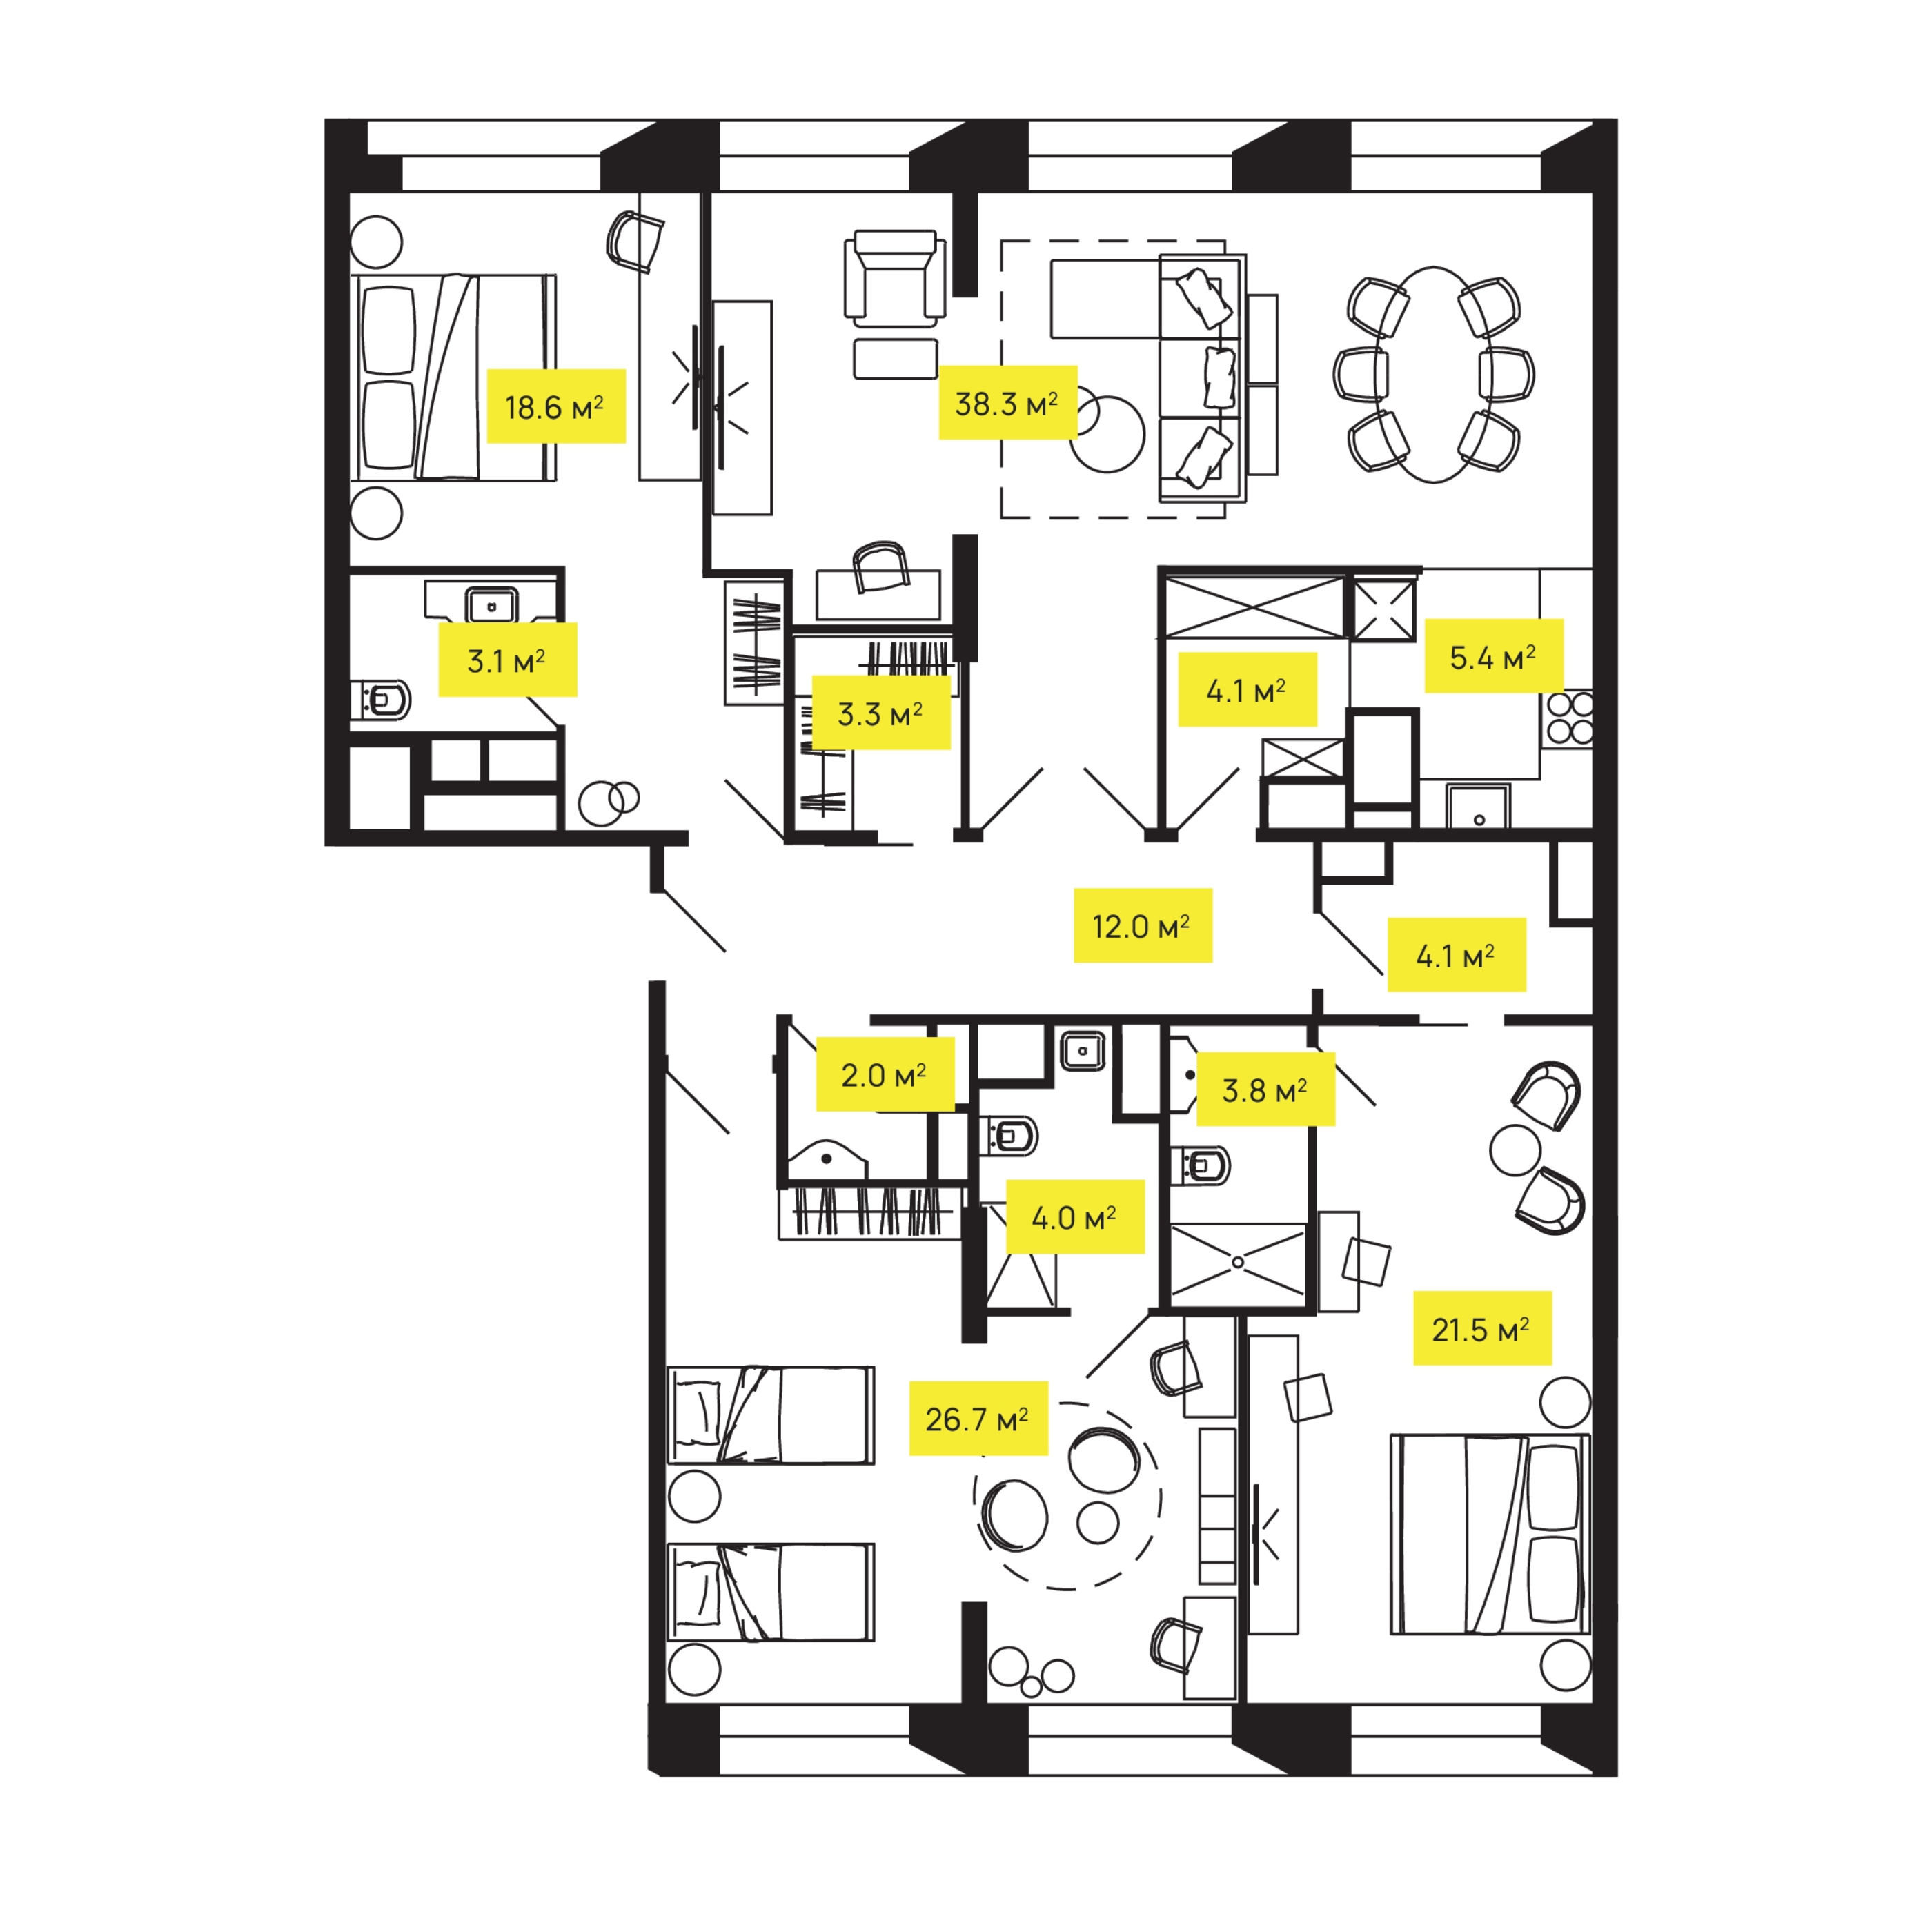 4 комн. квартира, 148.1 м², 24 этаж  (из 24)